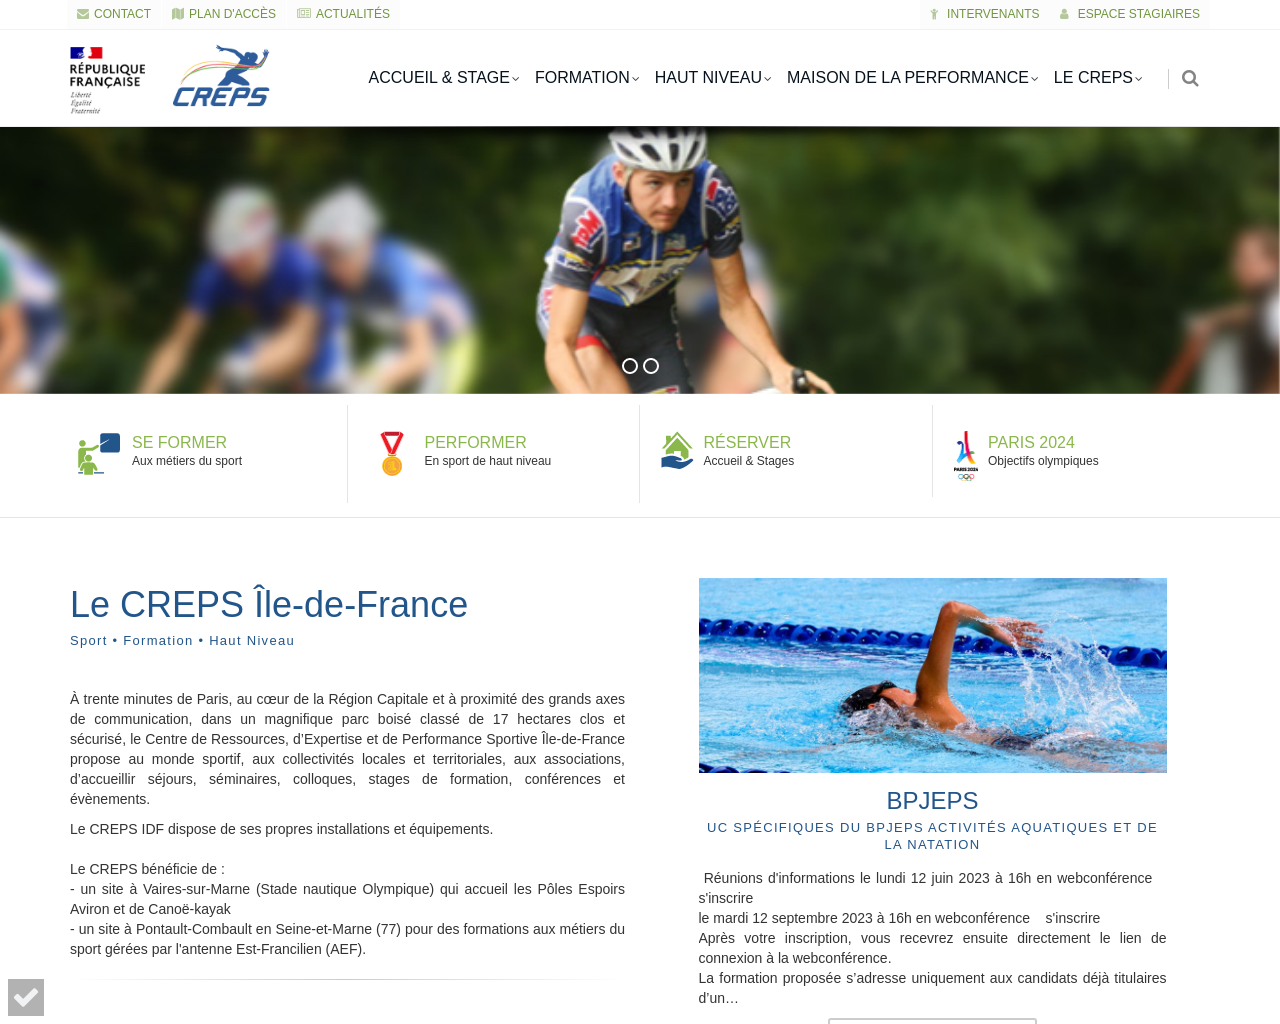 www.creps-idf.fr